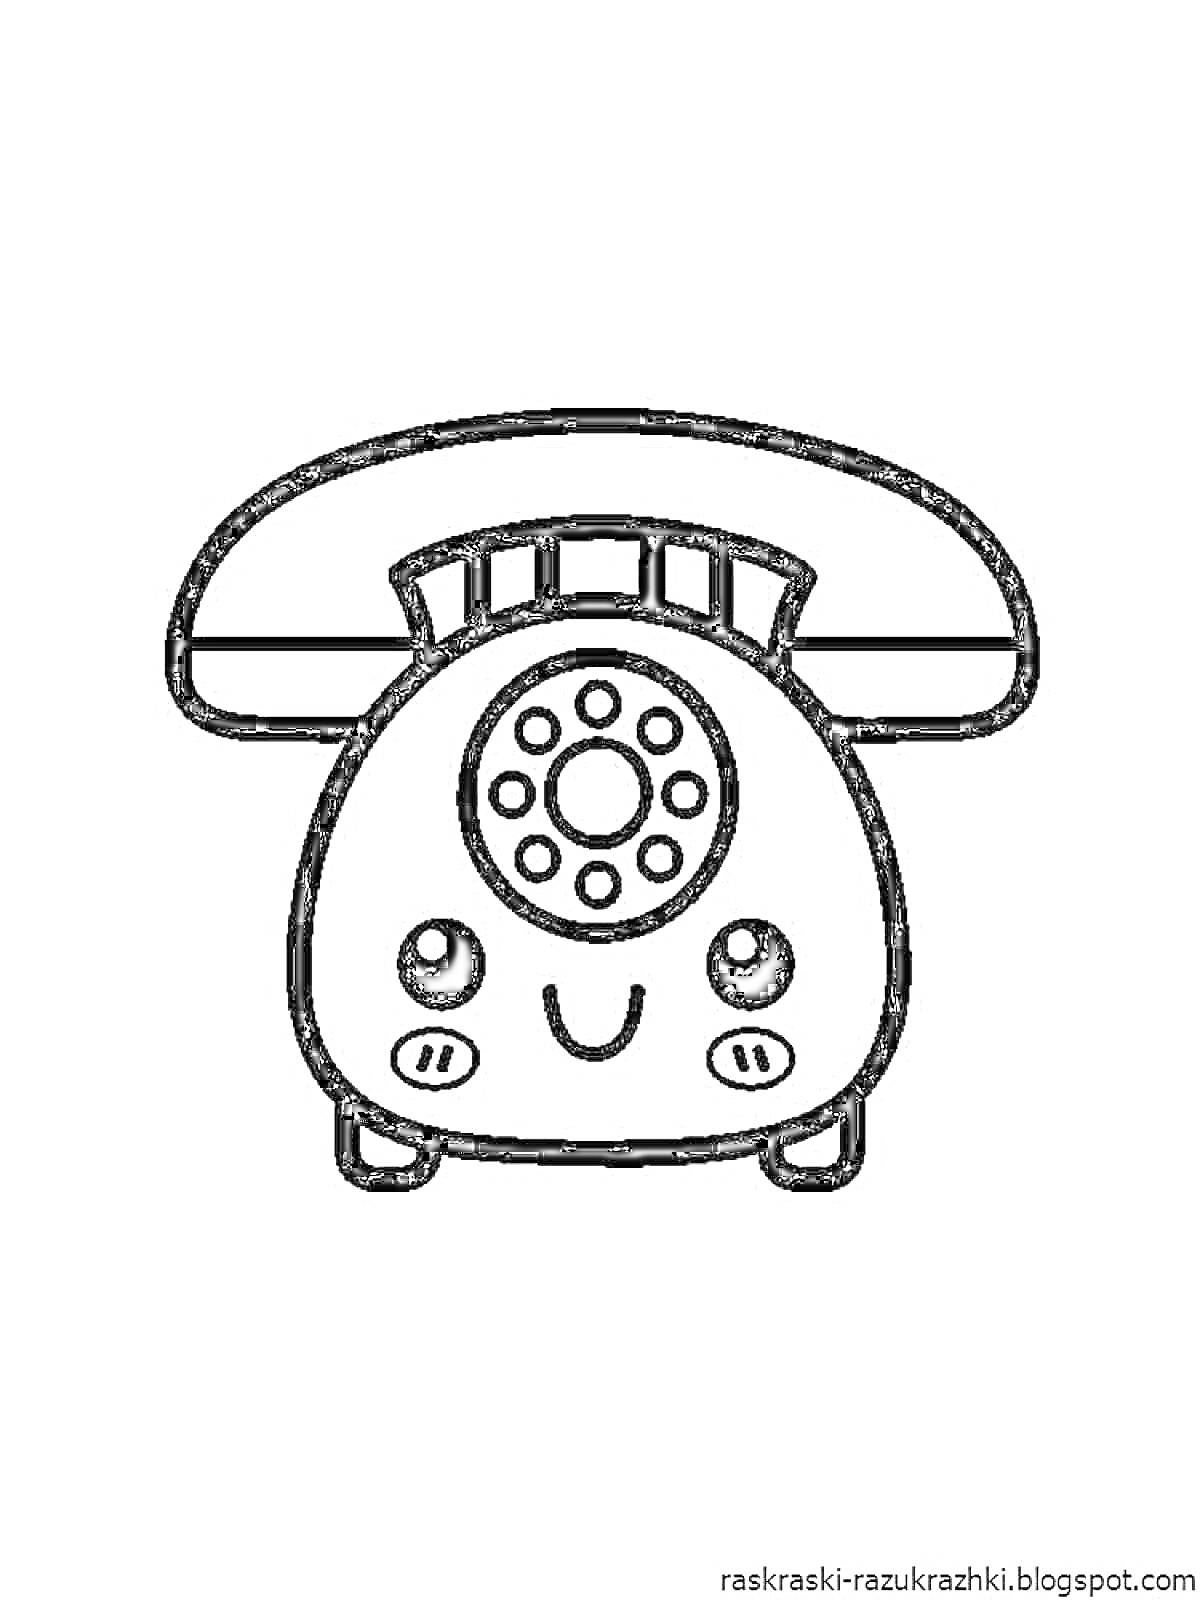 Раскраска Старинный телефон с улыбающимся лицом, счетчиками, кнопками и ручкой